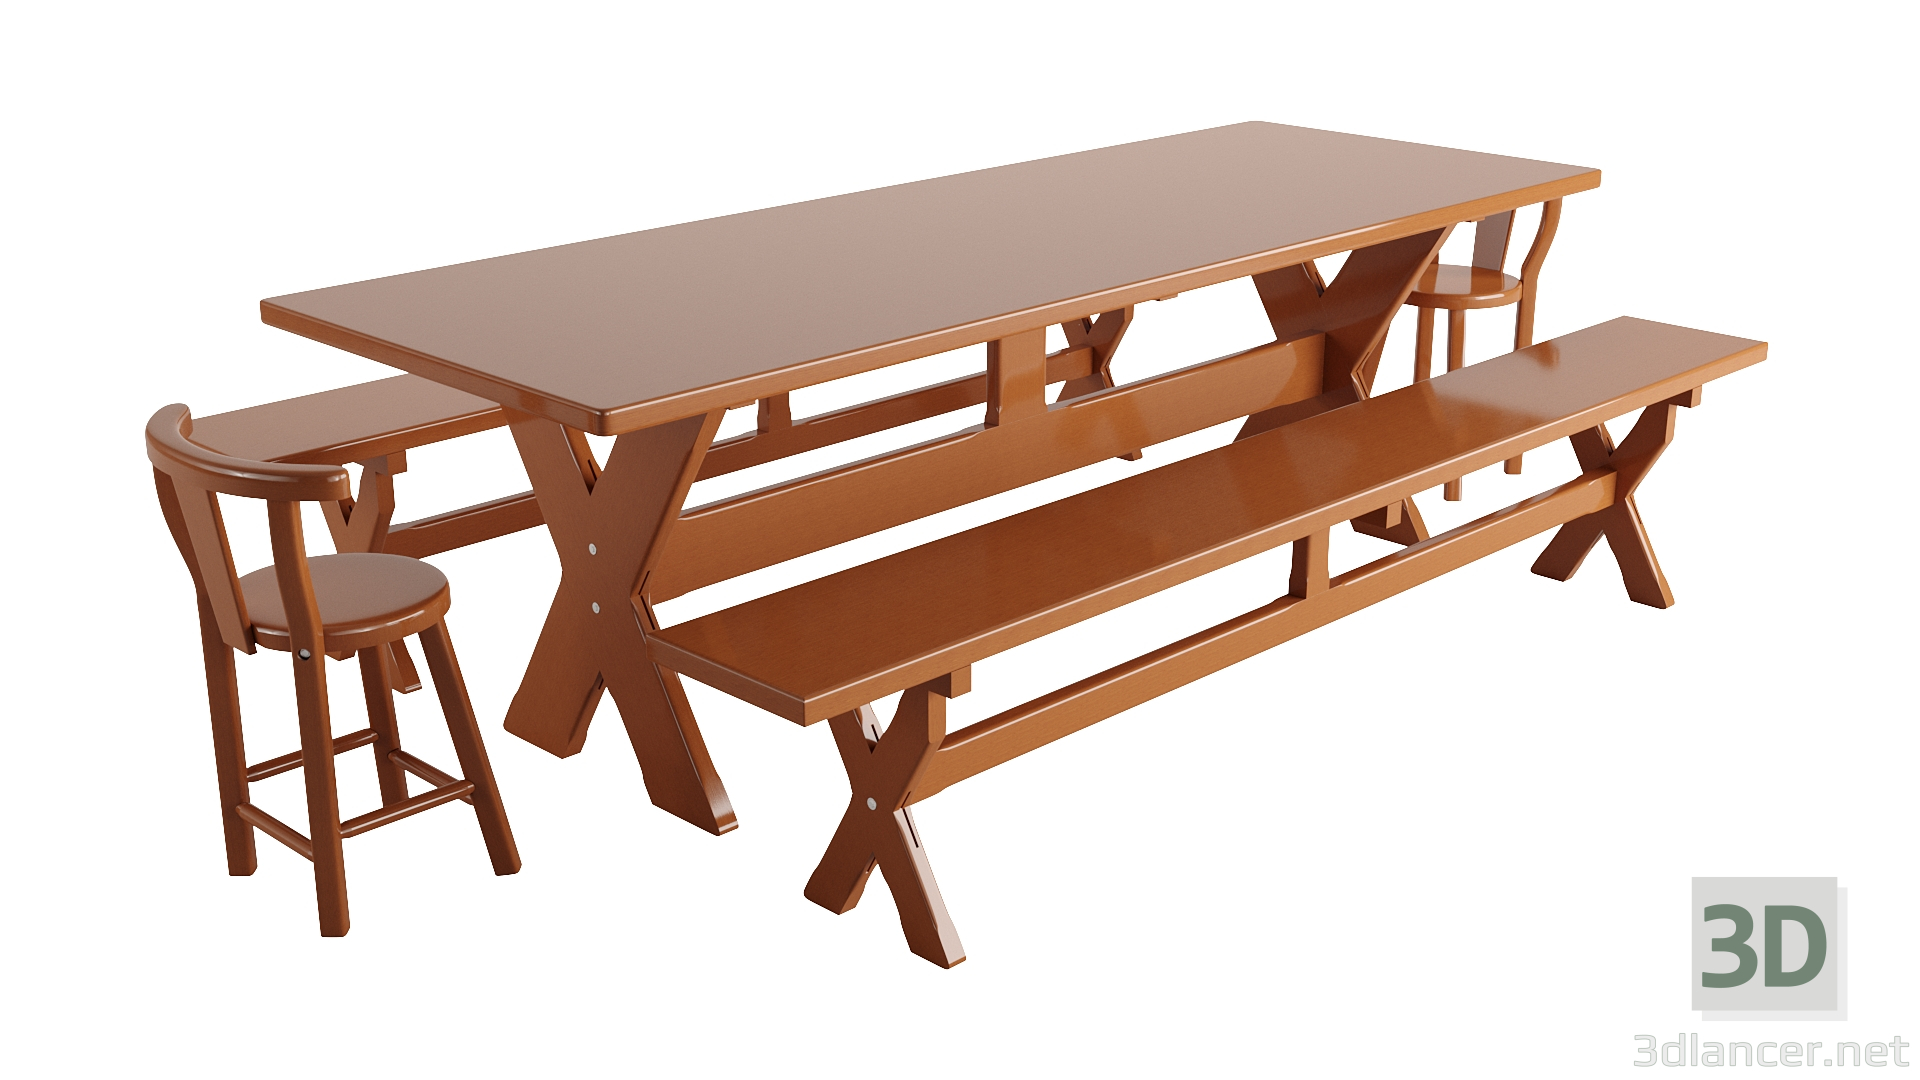 Tisch 3D-Modell kaufen - Rendern